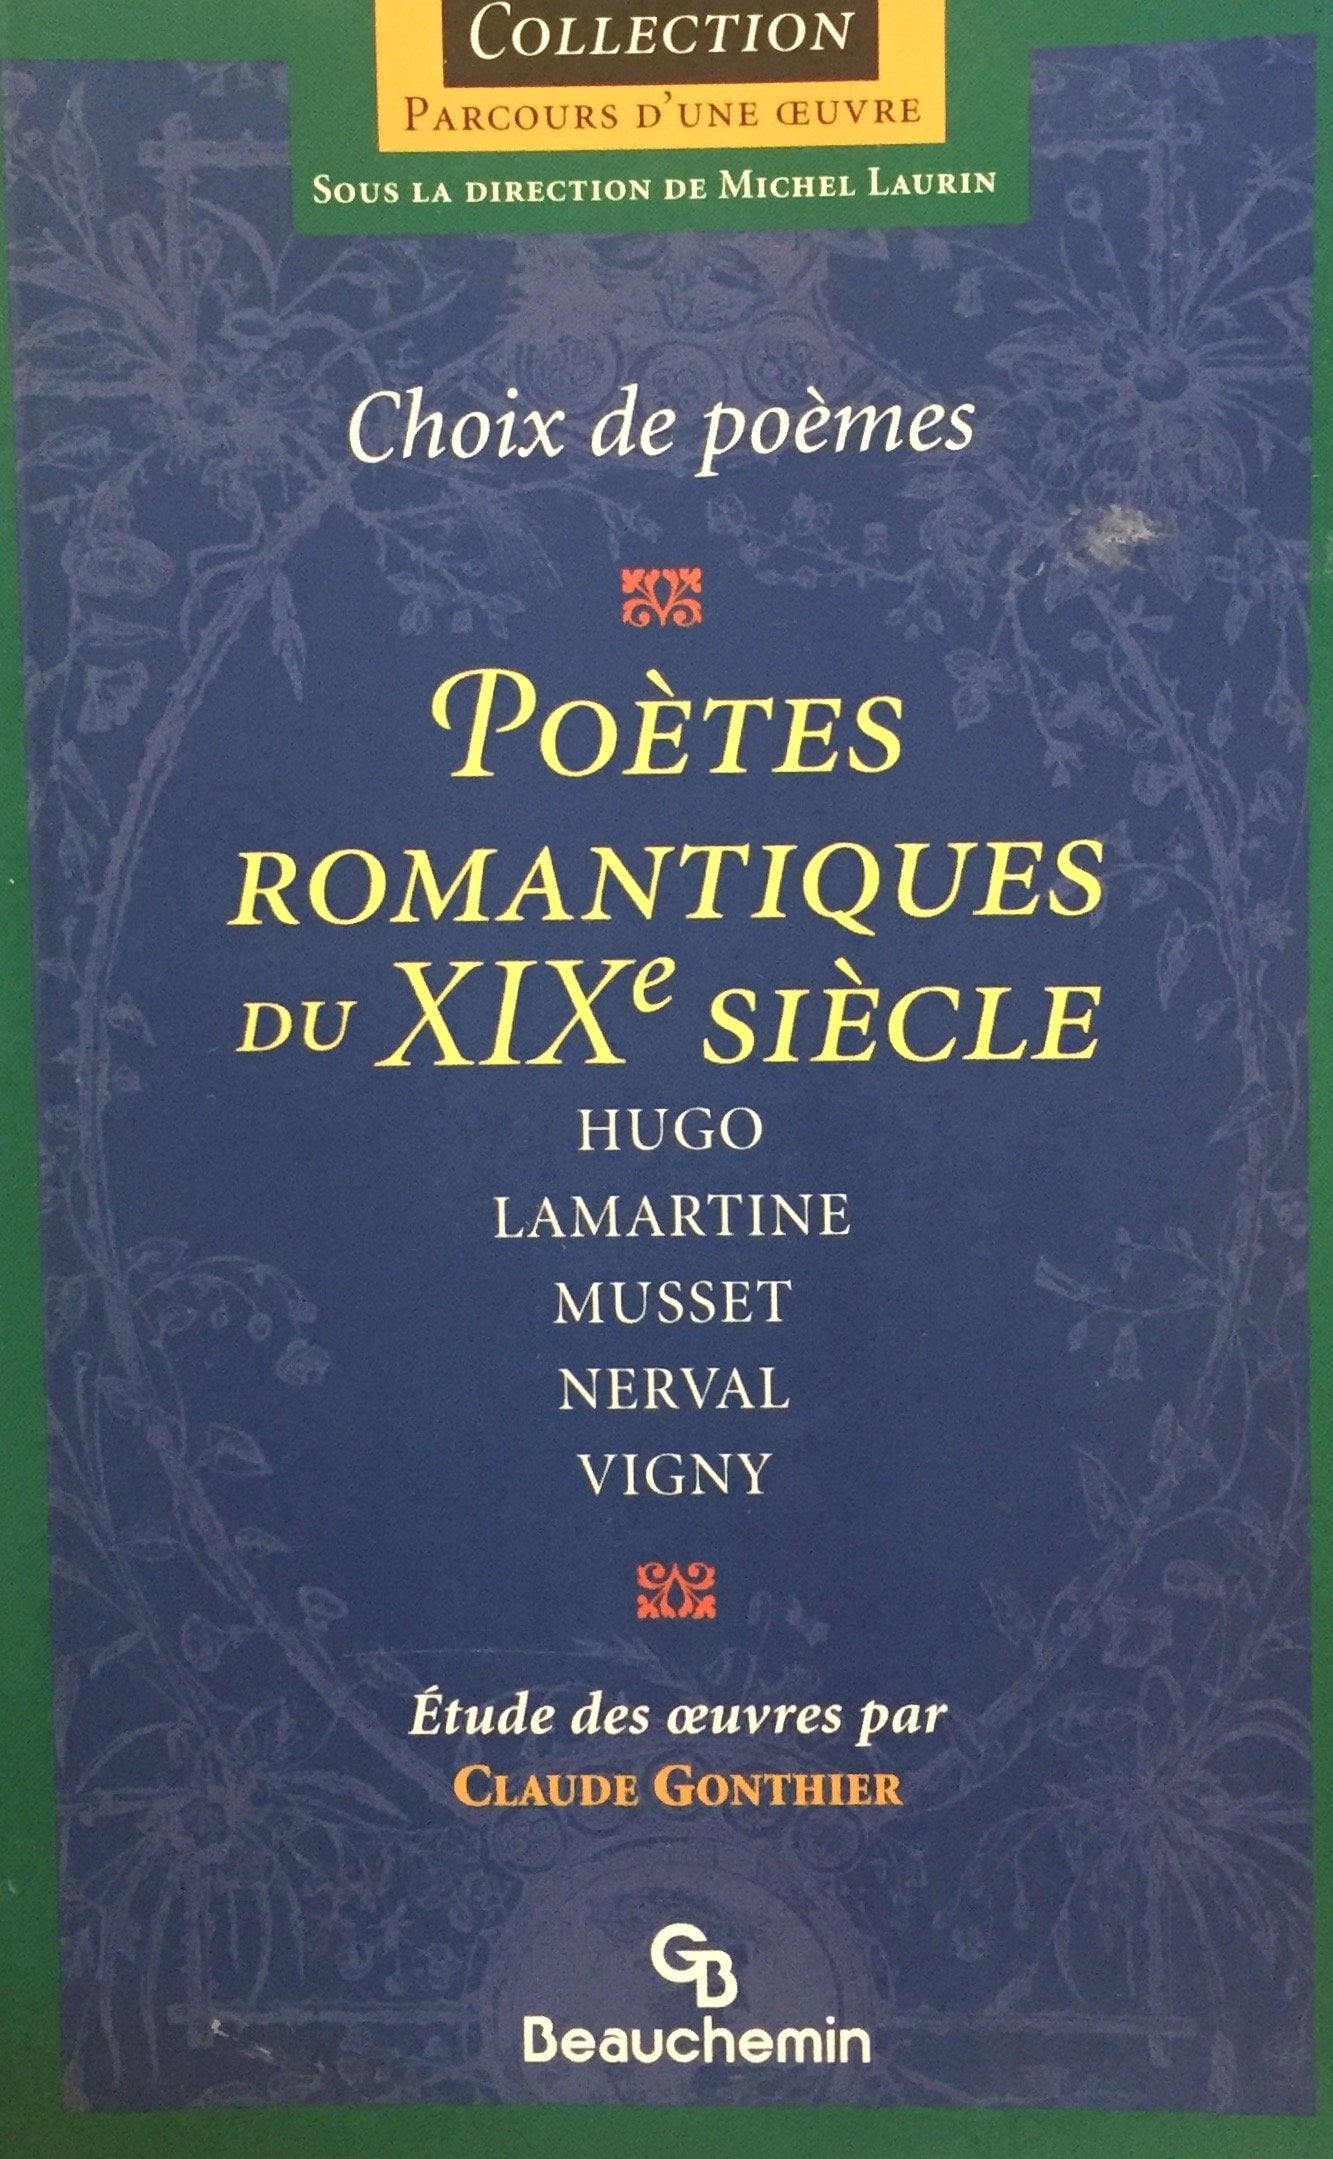 Livre ISBN 2761611926 Parcours d'une Oeuvre : Choix de poème : Poètes romantiques du XIXe siècle (Hugo, Lamartine, Musset, Nerval, Vigny (Claude Gonthier)